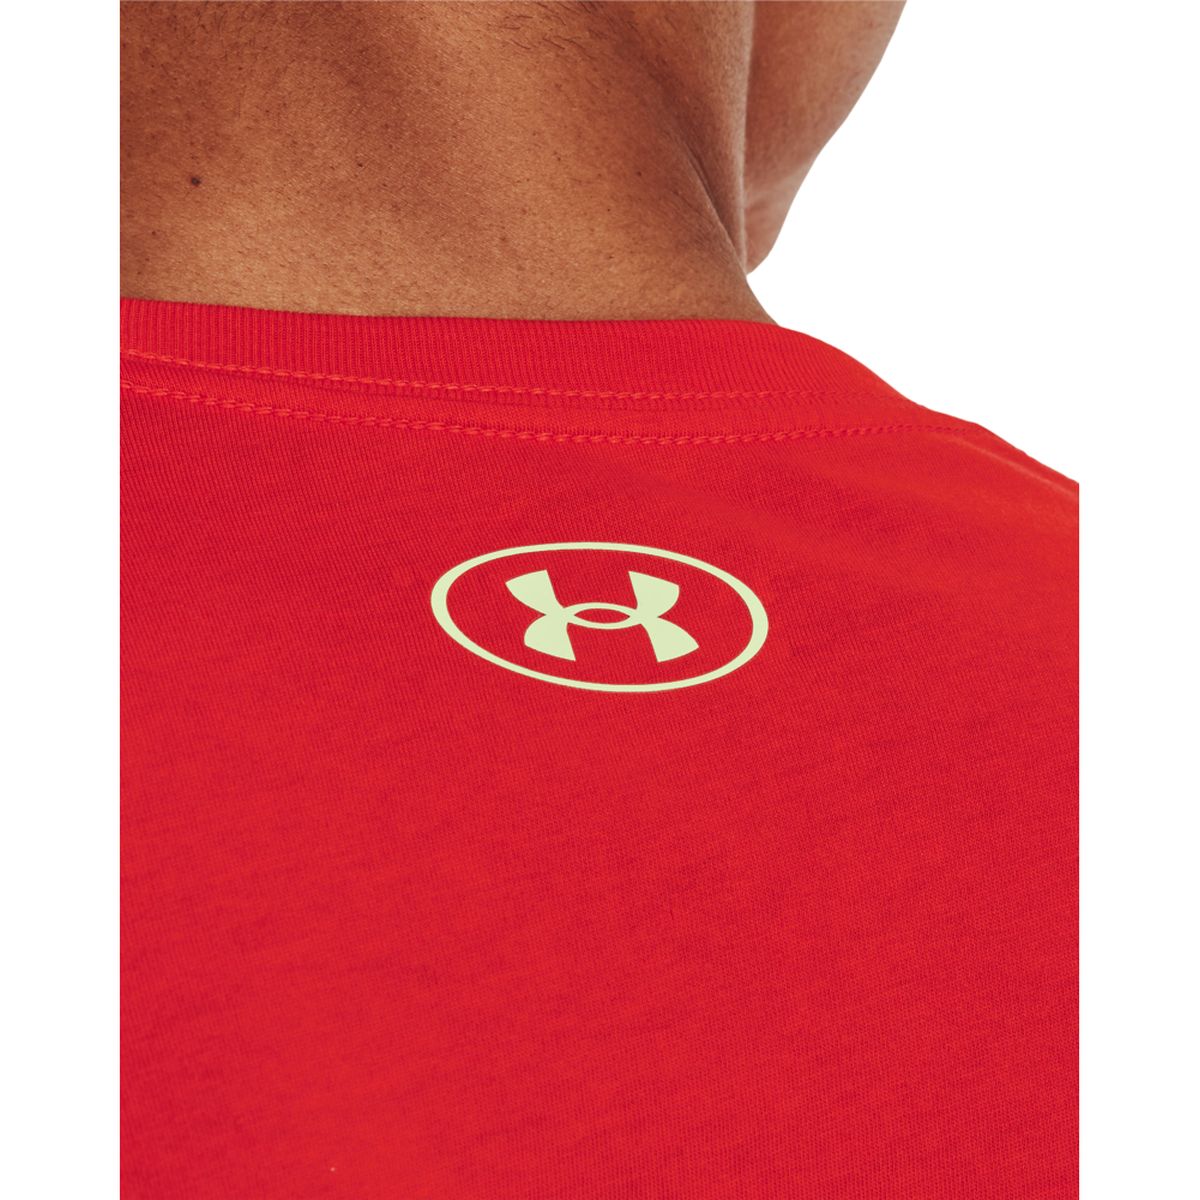 Under Armour UA Team Issue Wordmark Herren T-Shirt_4